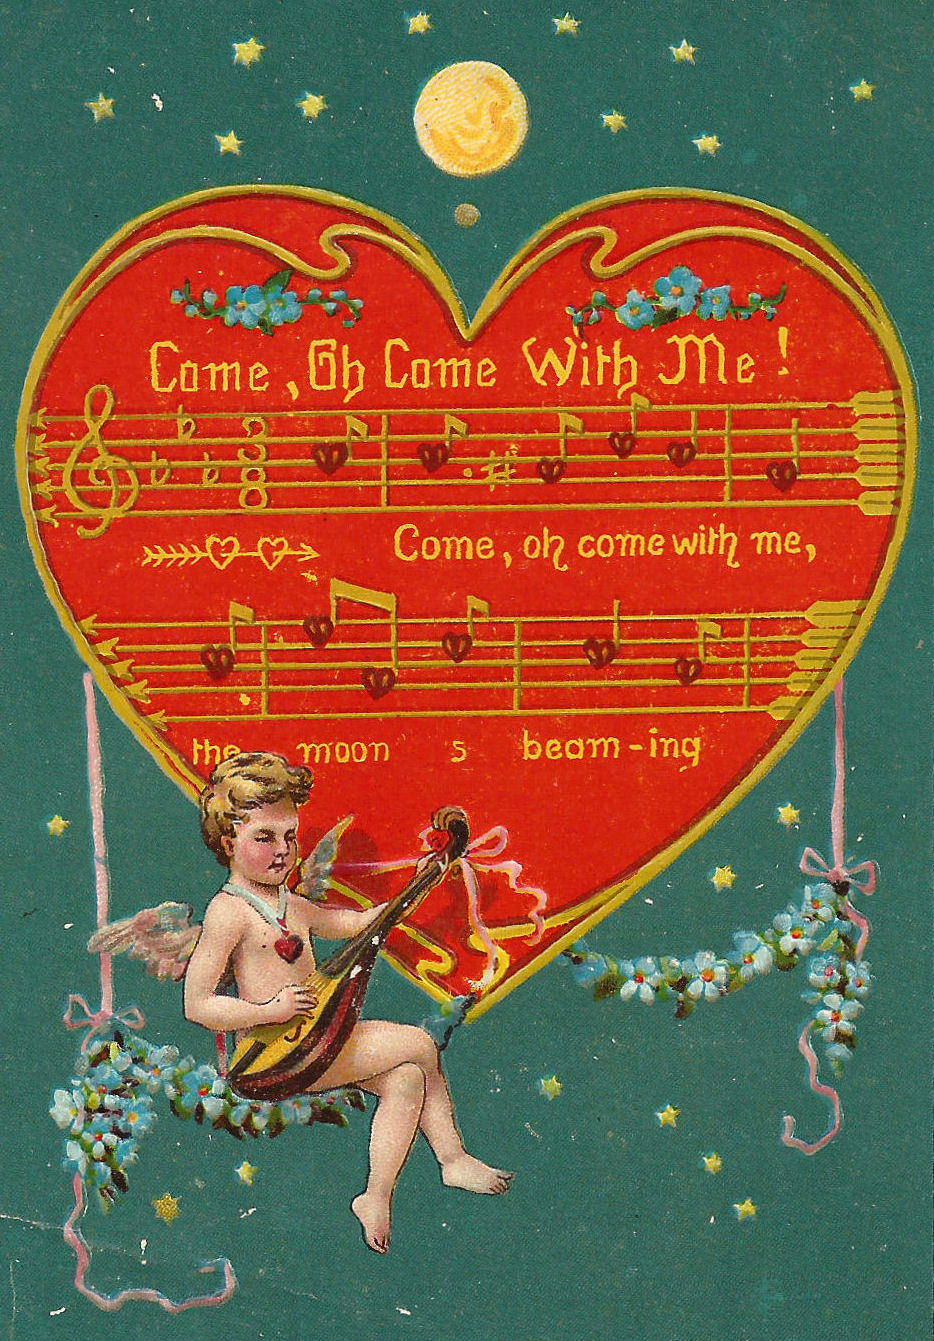 Antique Images: Free Valentine Graphic: Vintage Valentine's Day